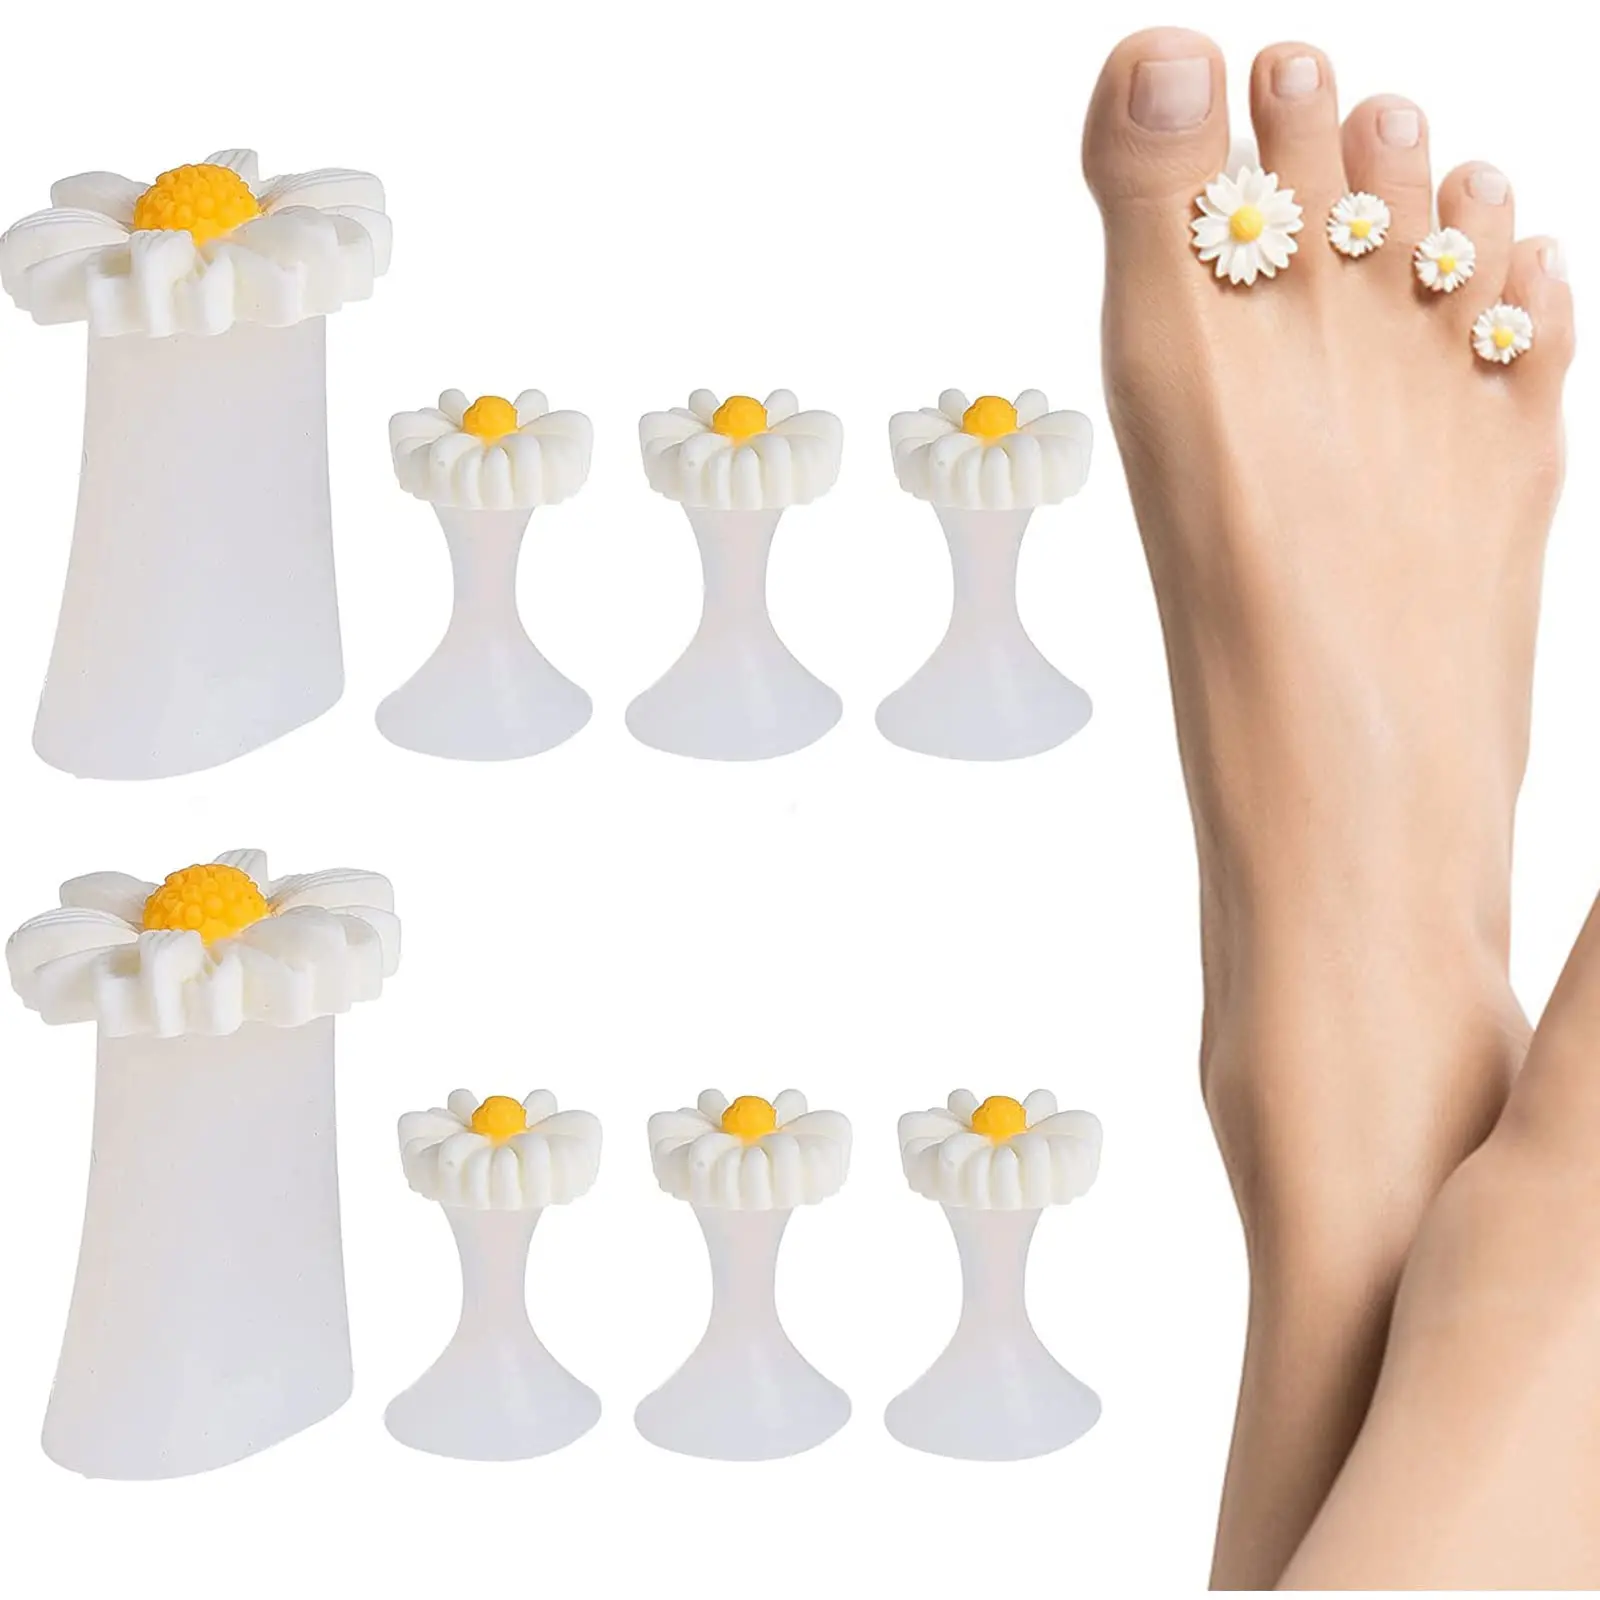 

Силиконовые разделители для пальцев ног с маргаритками для педикюра, Гель-лак для ног, разделители для пальцев ног, инструменты для дизайна ногтей